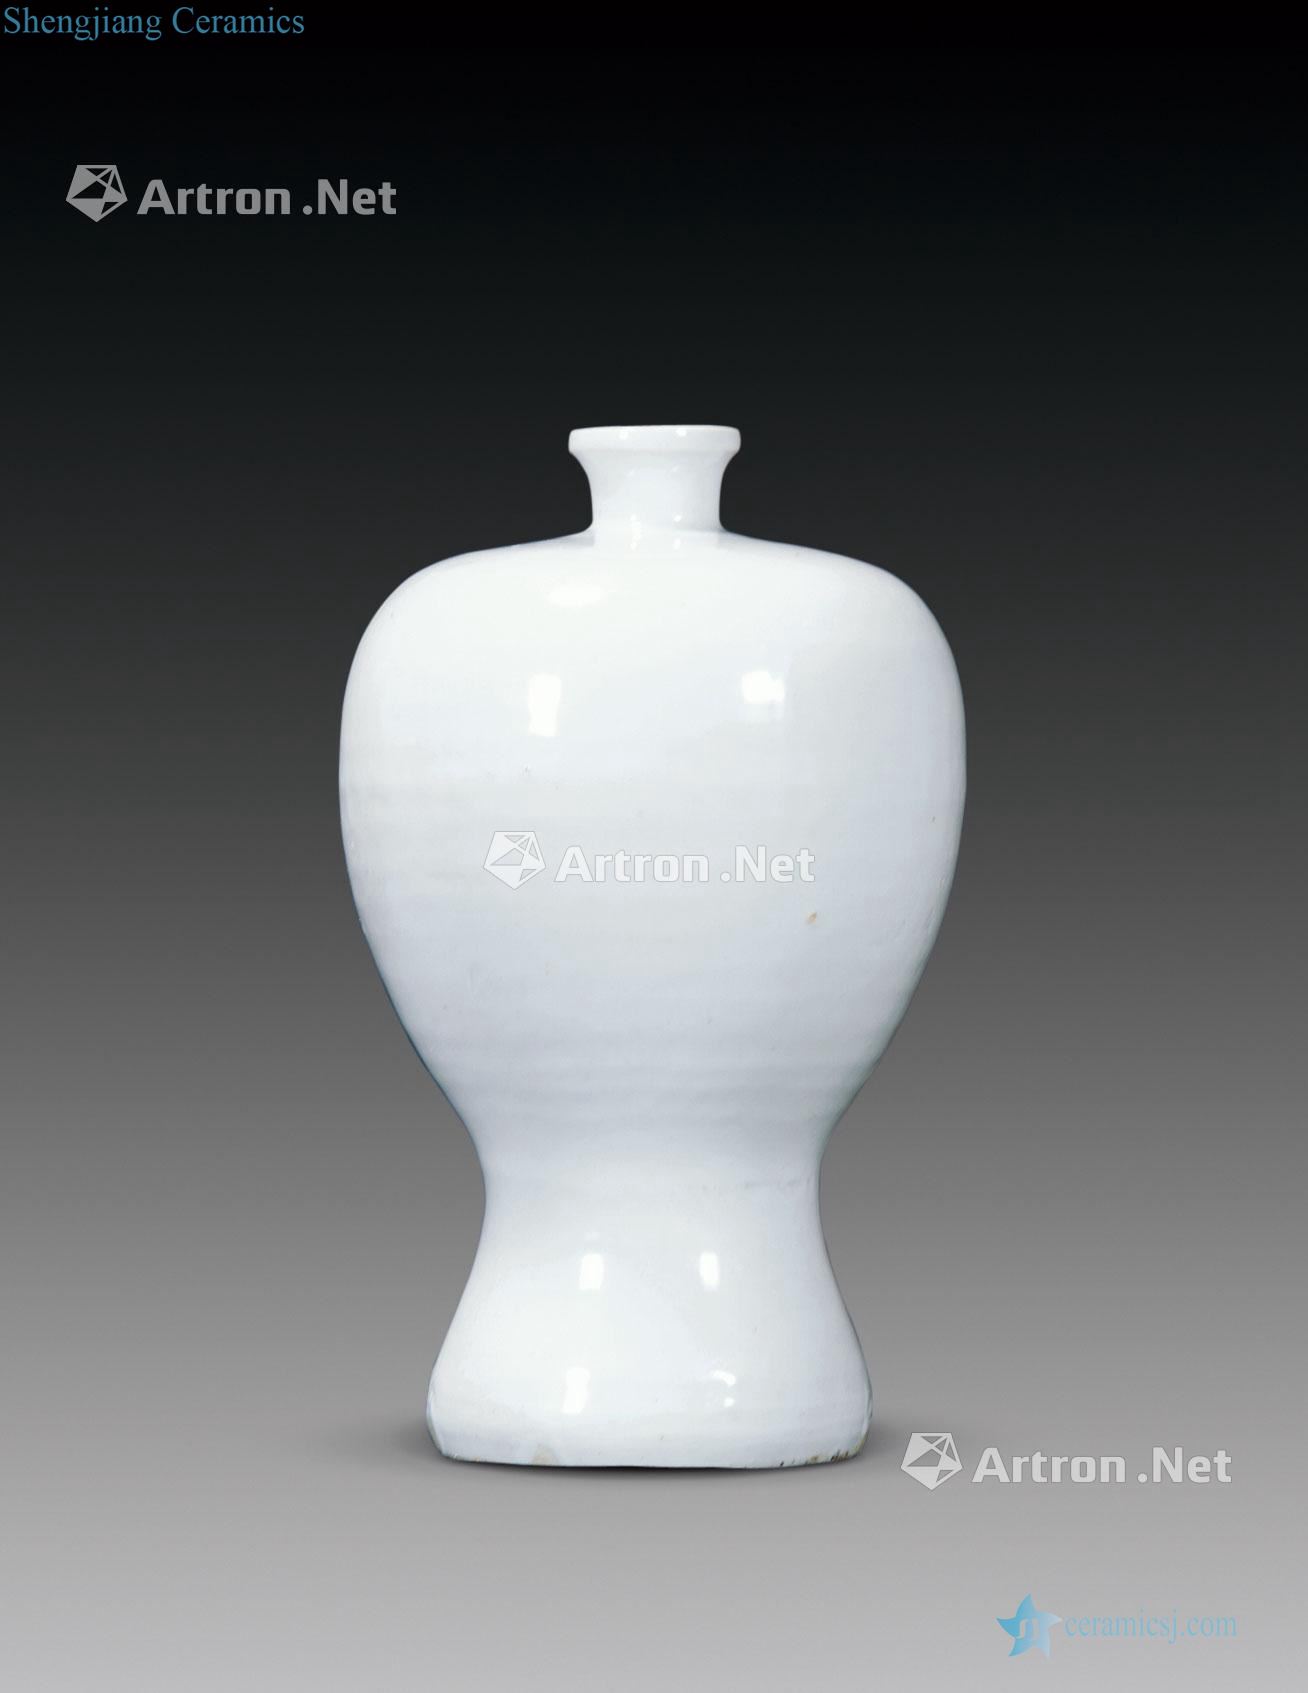 yuan White glazed mei bottle